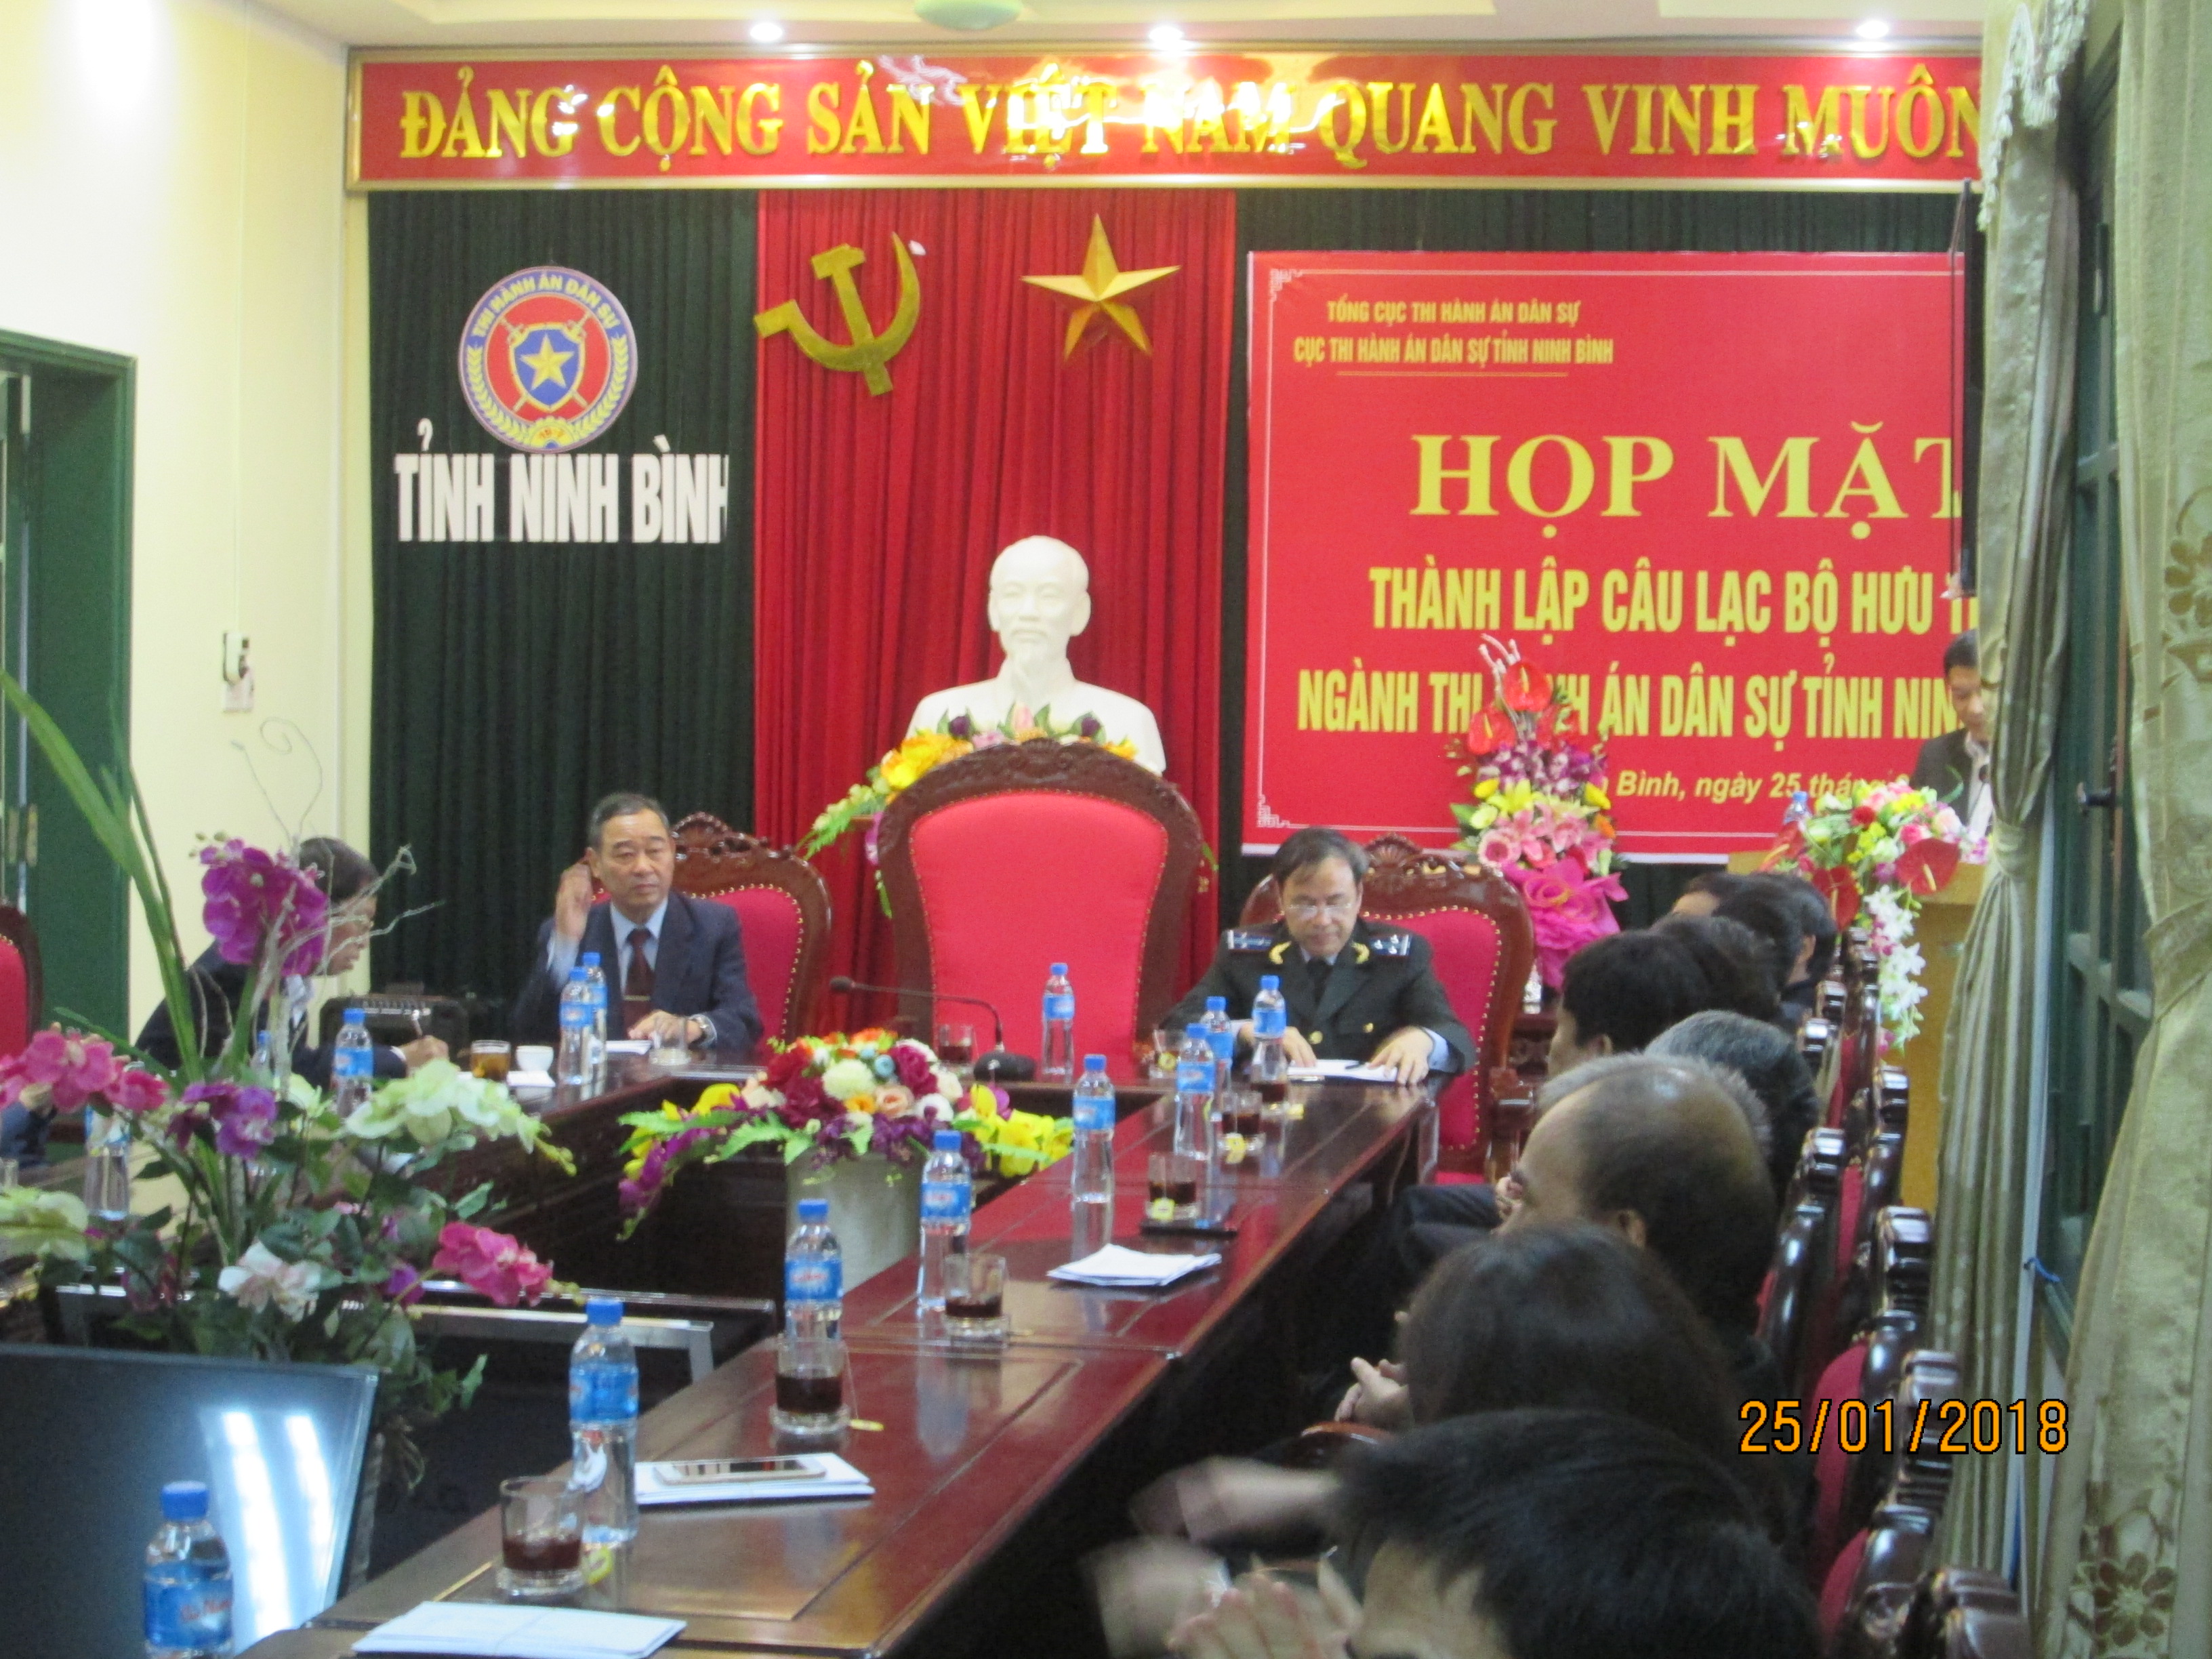 Cục THADS tỉnh Ninh Bình tổ chức gặp mặt cán bộ hưu trí ngành THADS tỉnh Ninh Bình.